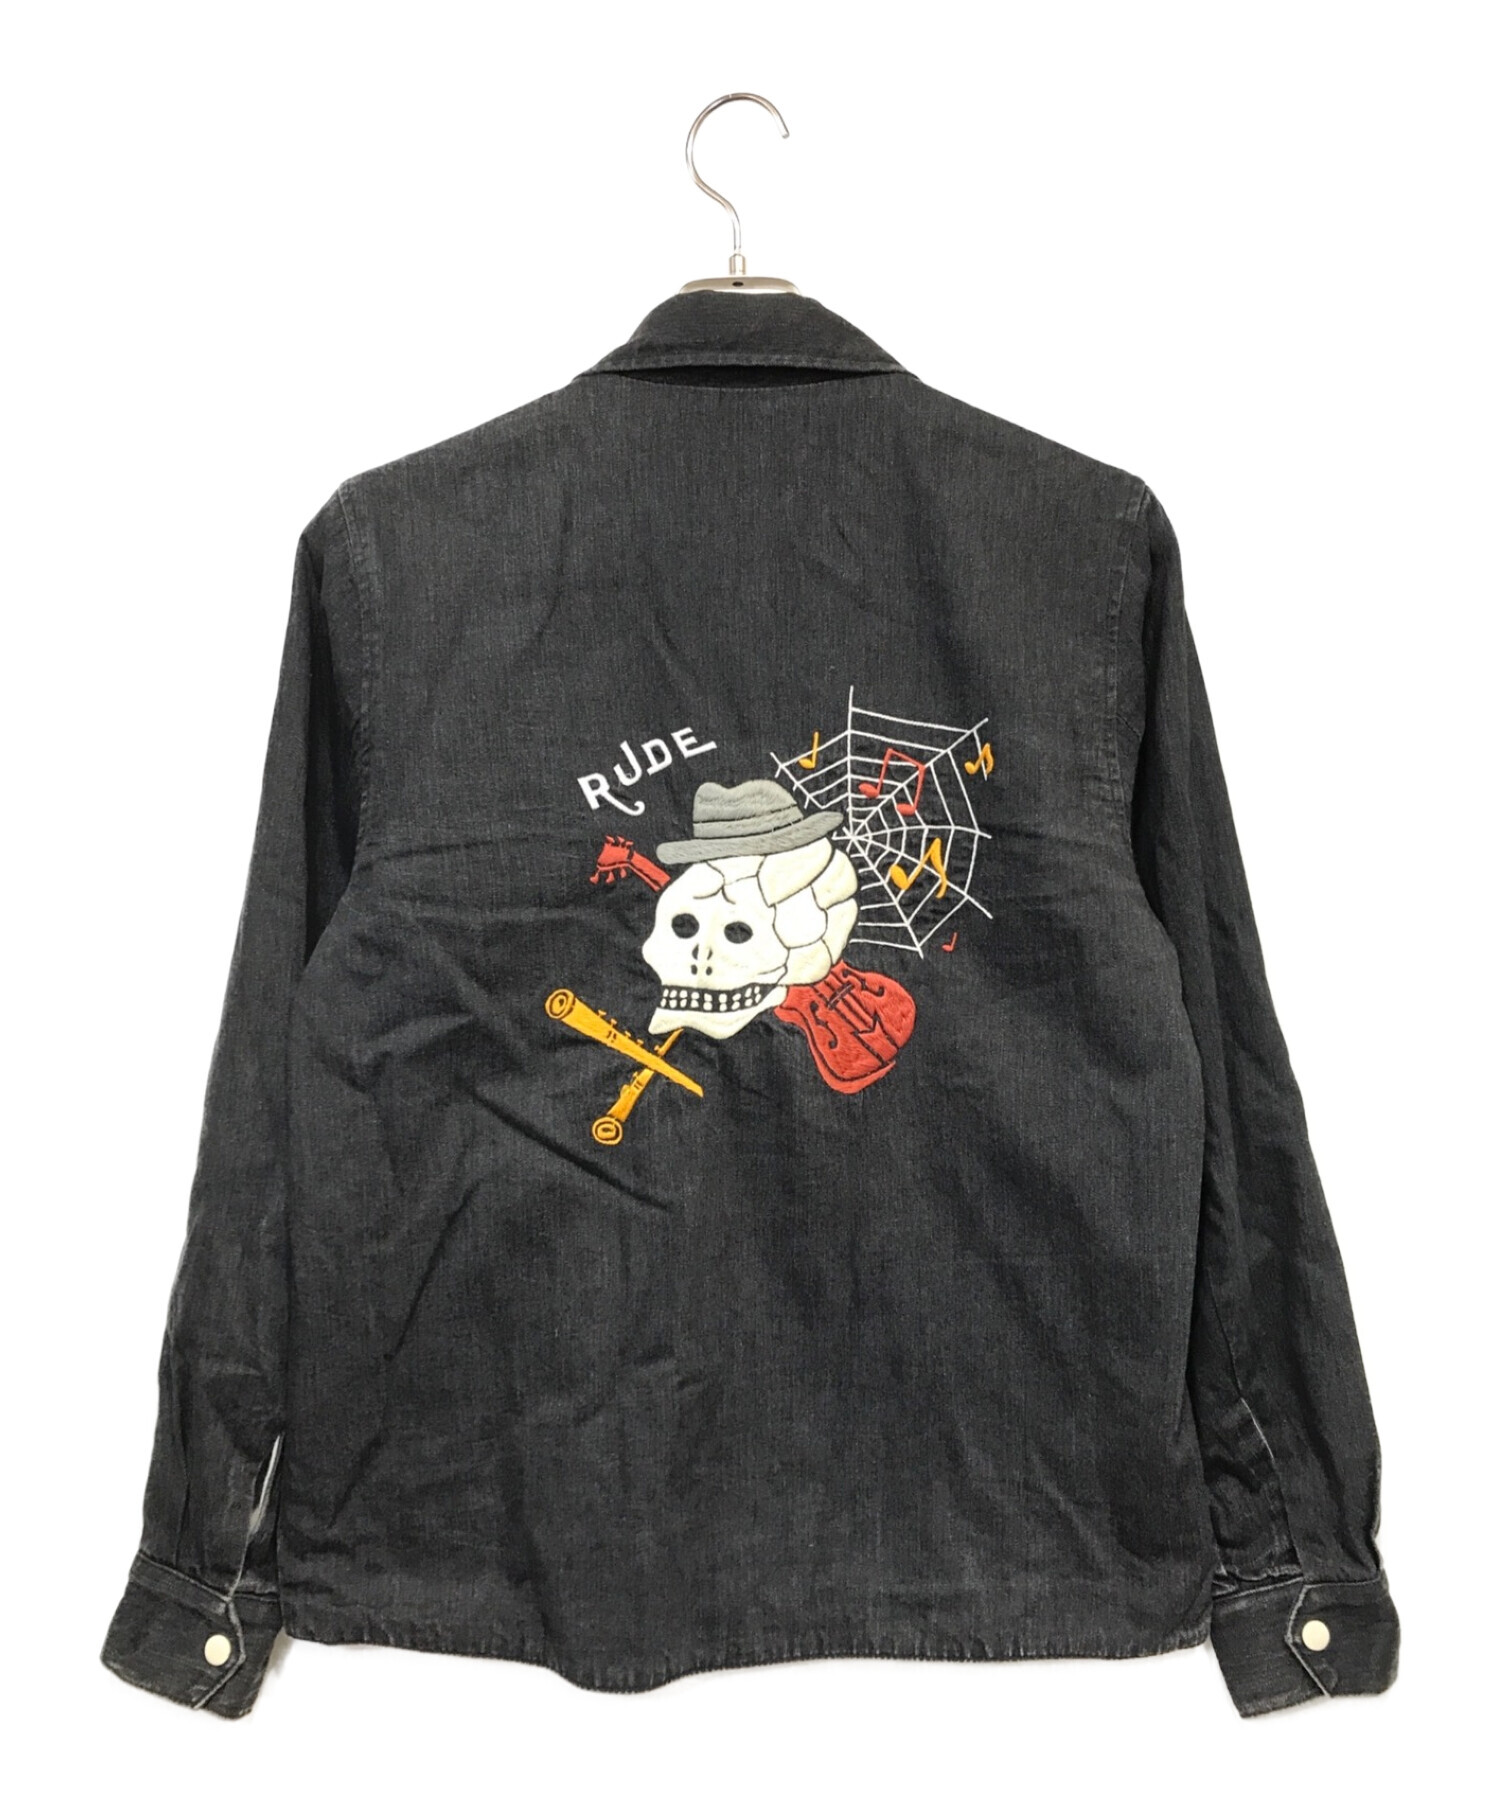 RUDE GALLERY (ルードギャラリー) スカル刺繍ジャケット ブラック サイズ:3